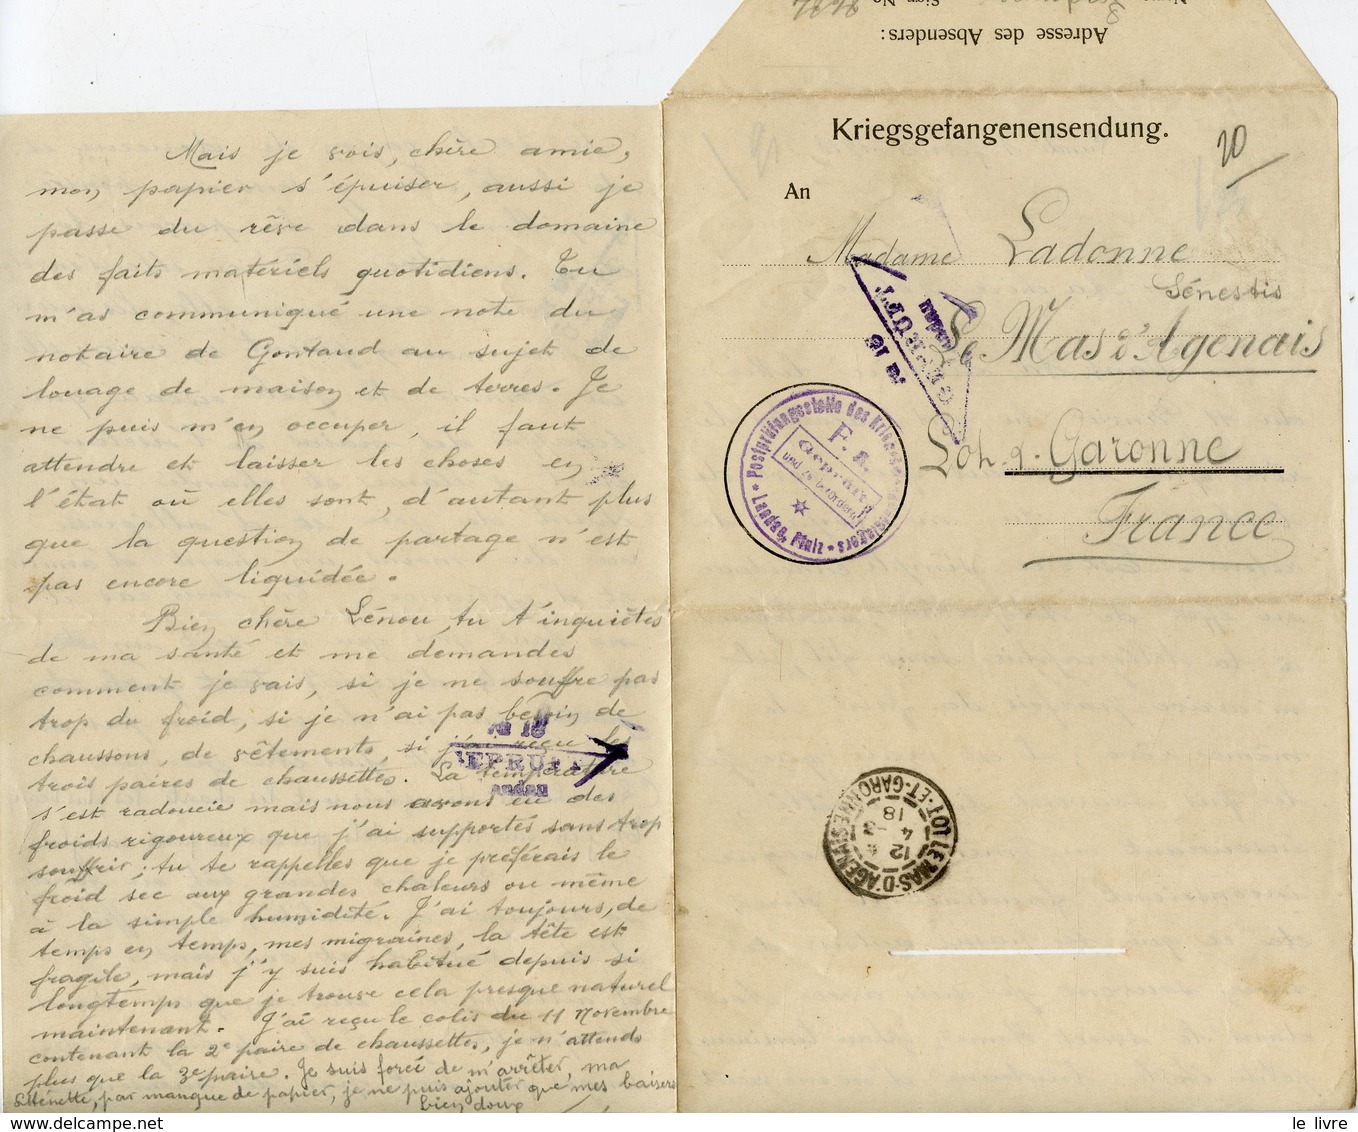 WW1 CAMP DE PRISONNIERS DE LANDAU 1917/18 LOT DOCUMENTS KRIEGSGEFANGENENSENDUNG PRISONNIER A SA FAMILLE LE MAS D'AGENAIS - Dokumente